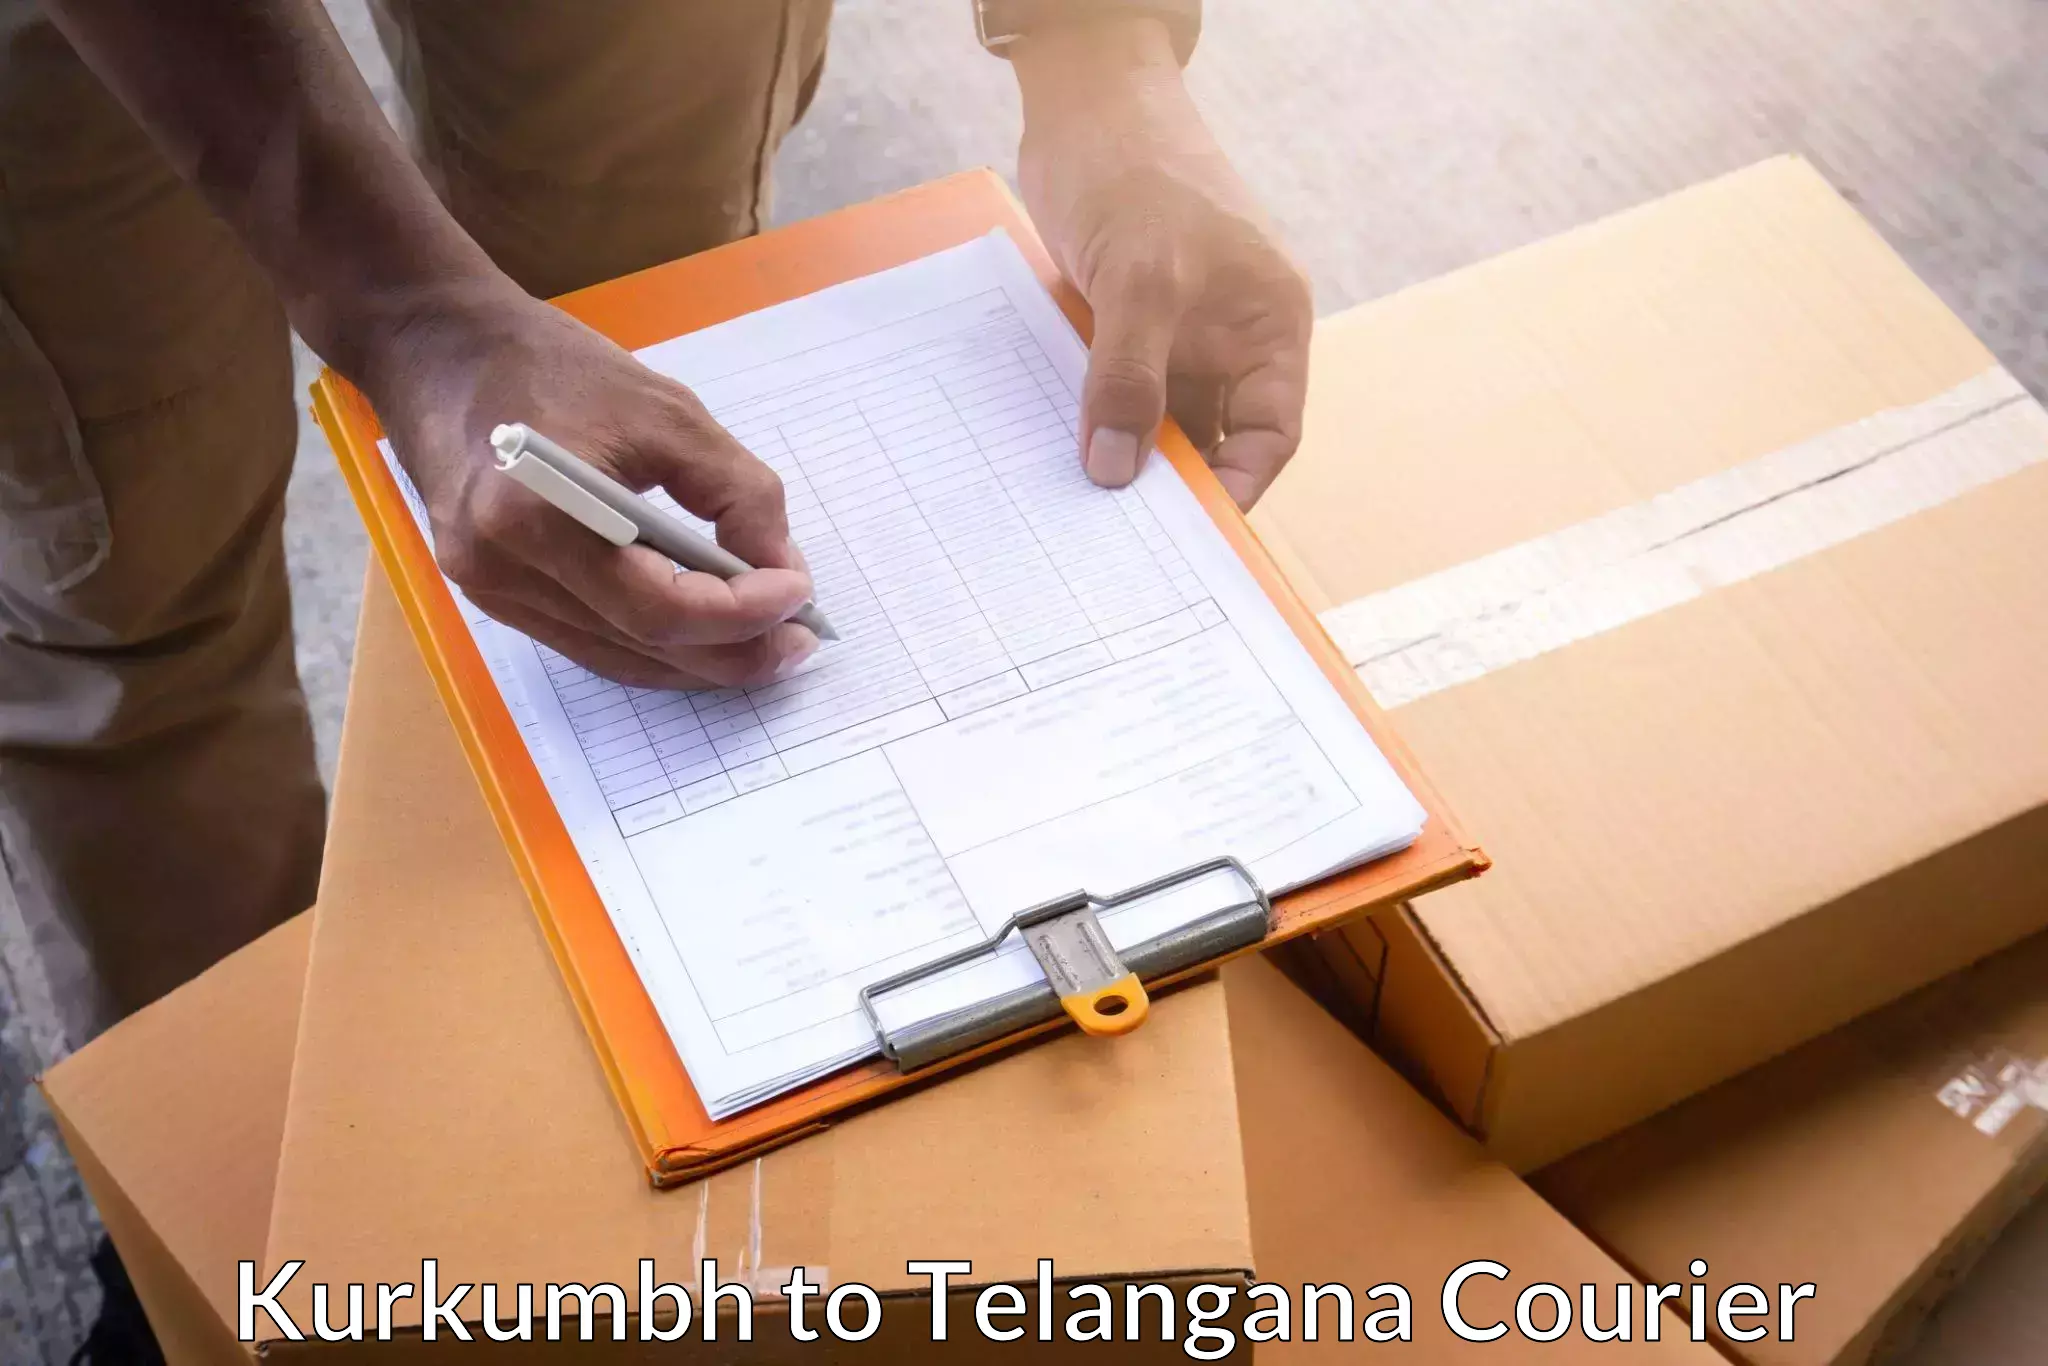 Efficient courier operations in Kurkumbh to Zahirabad